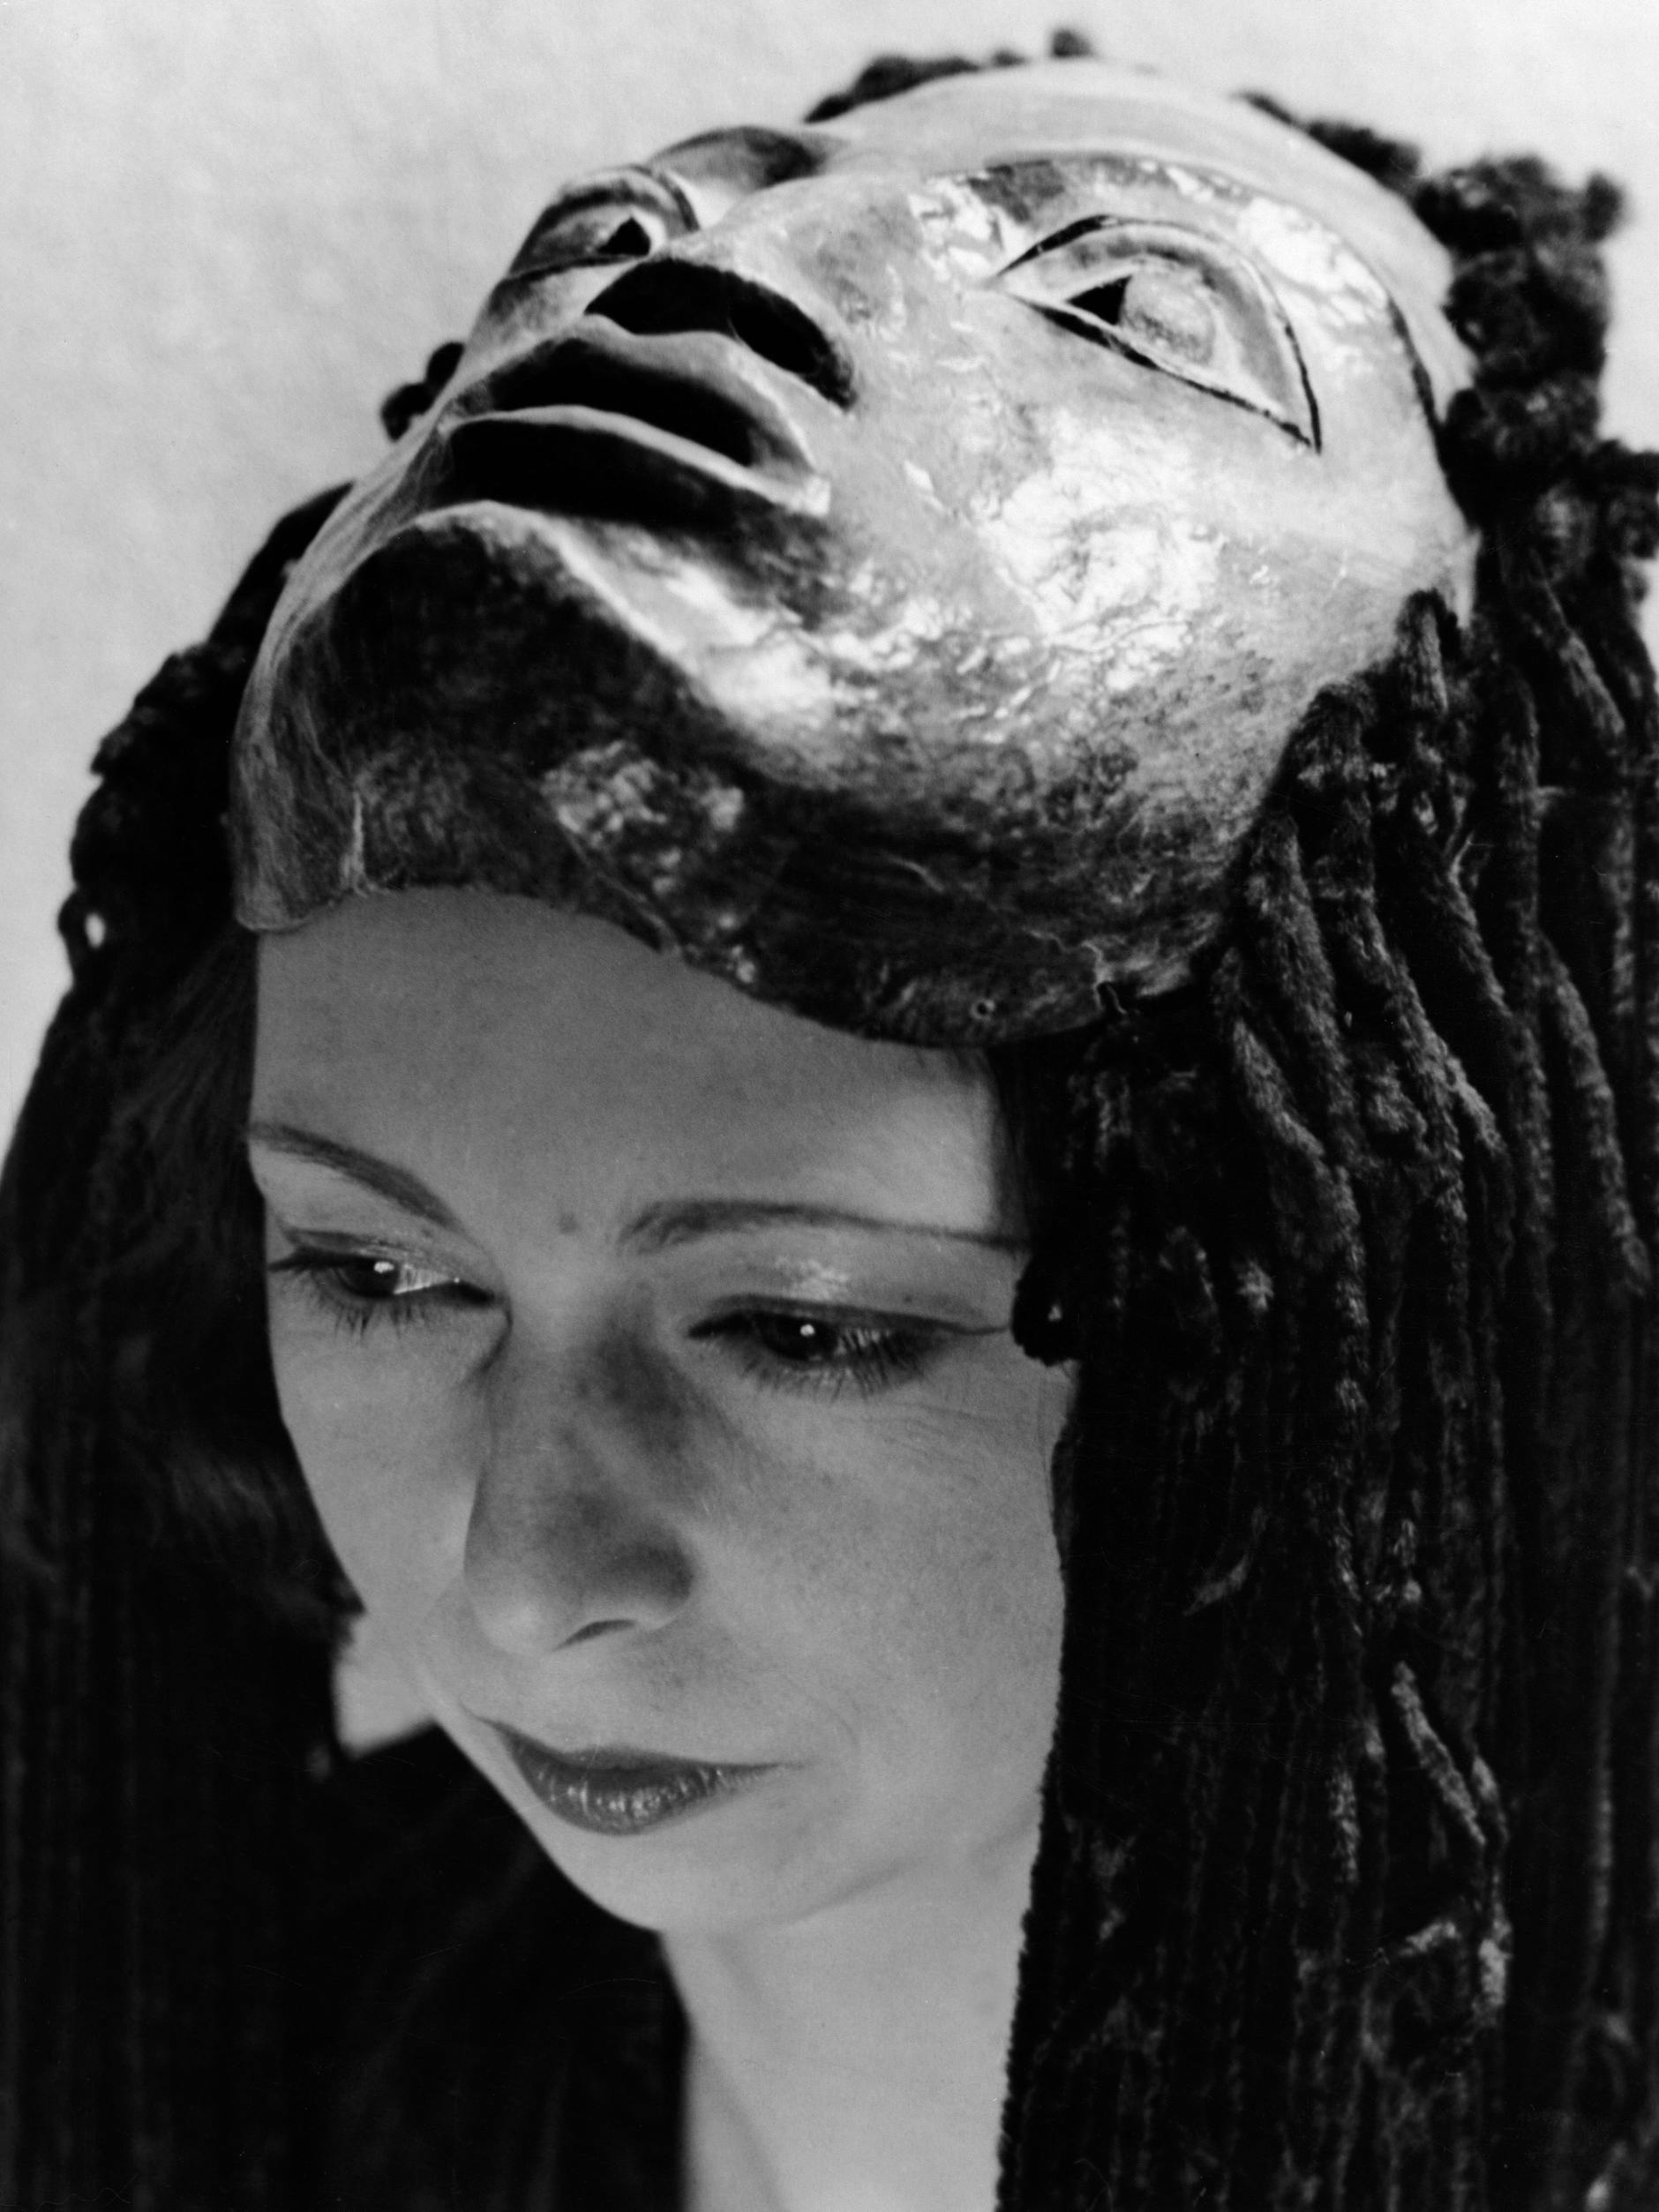 „Tragödie“ ist der Titel des Tanzes, den Oda Schottmüller mit dieser Maske vorführte. Das Foto erschien 1941 in der Allgemeinen Zeitung (DAZ).